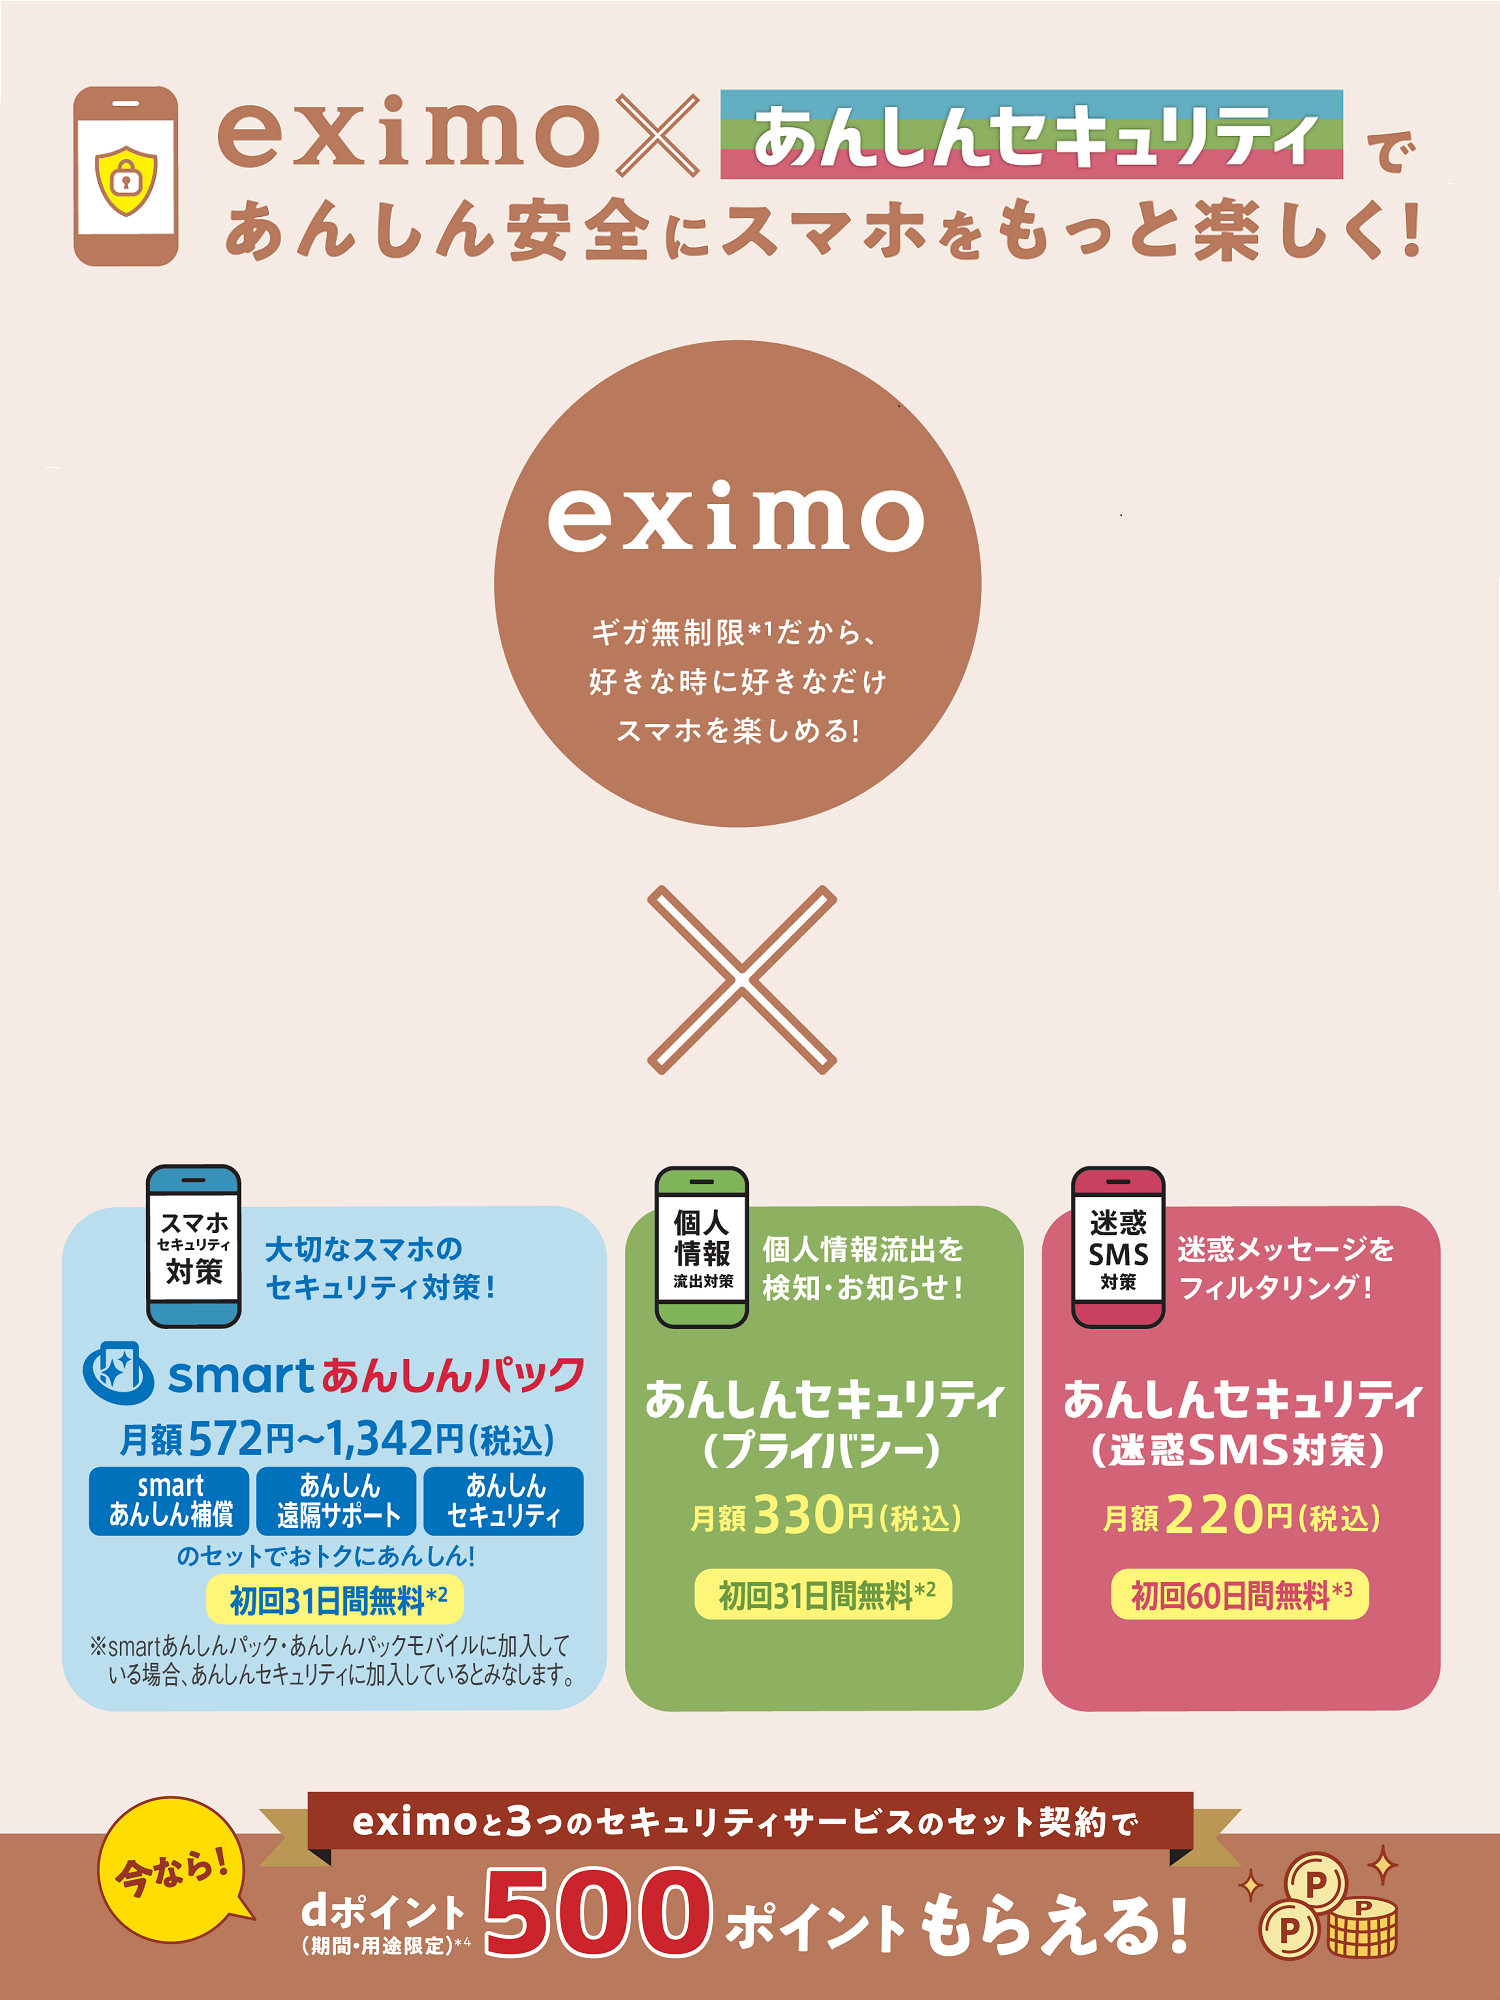 eximo×あんしんセキュリティ3サービス 500ptプレゼントキャンペーン